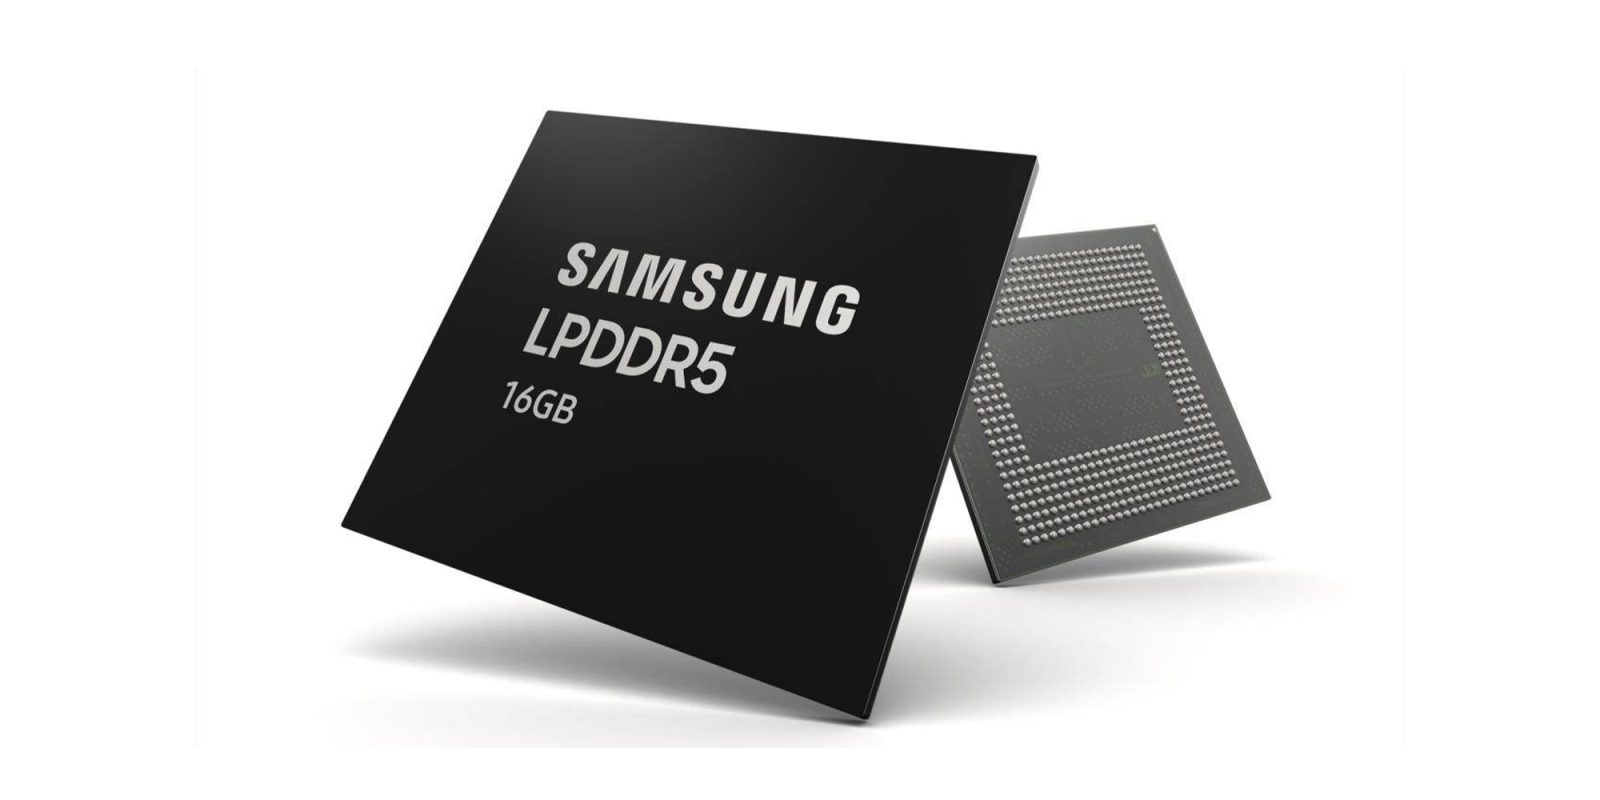 Samsung 16GB DDR5 RAM